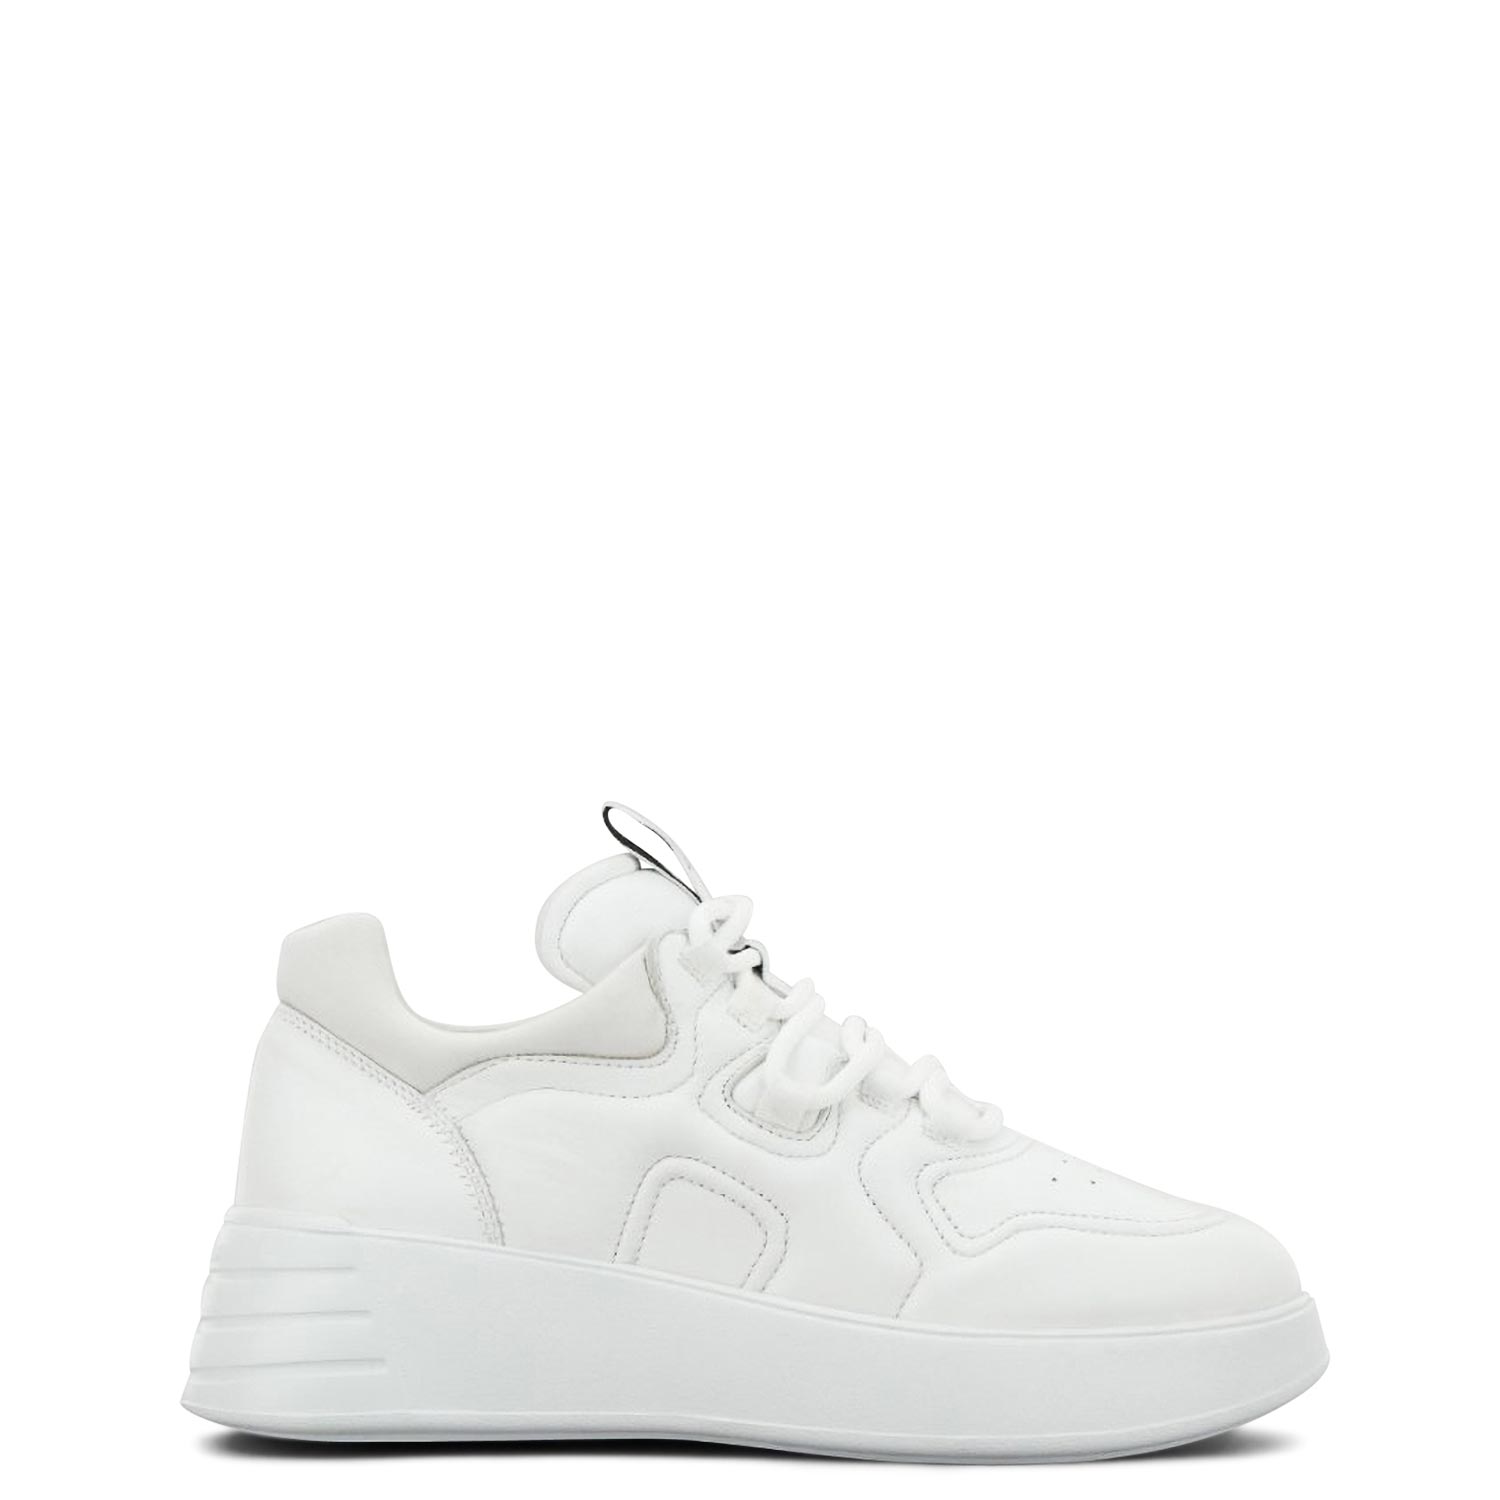 Υποδήματα - Sneakers Sneakers γυναικεία Hogan Λευκό REBEL H562 ALLA.IMBOTTITO